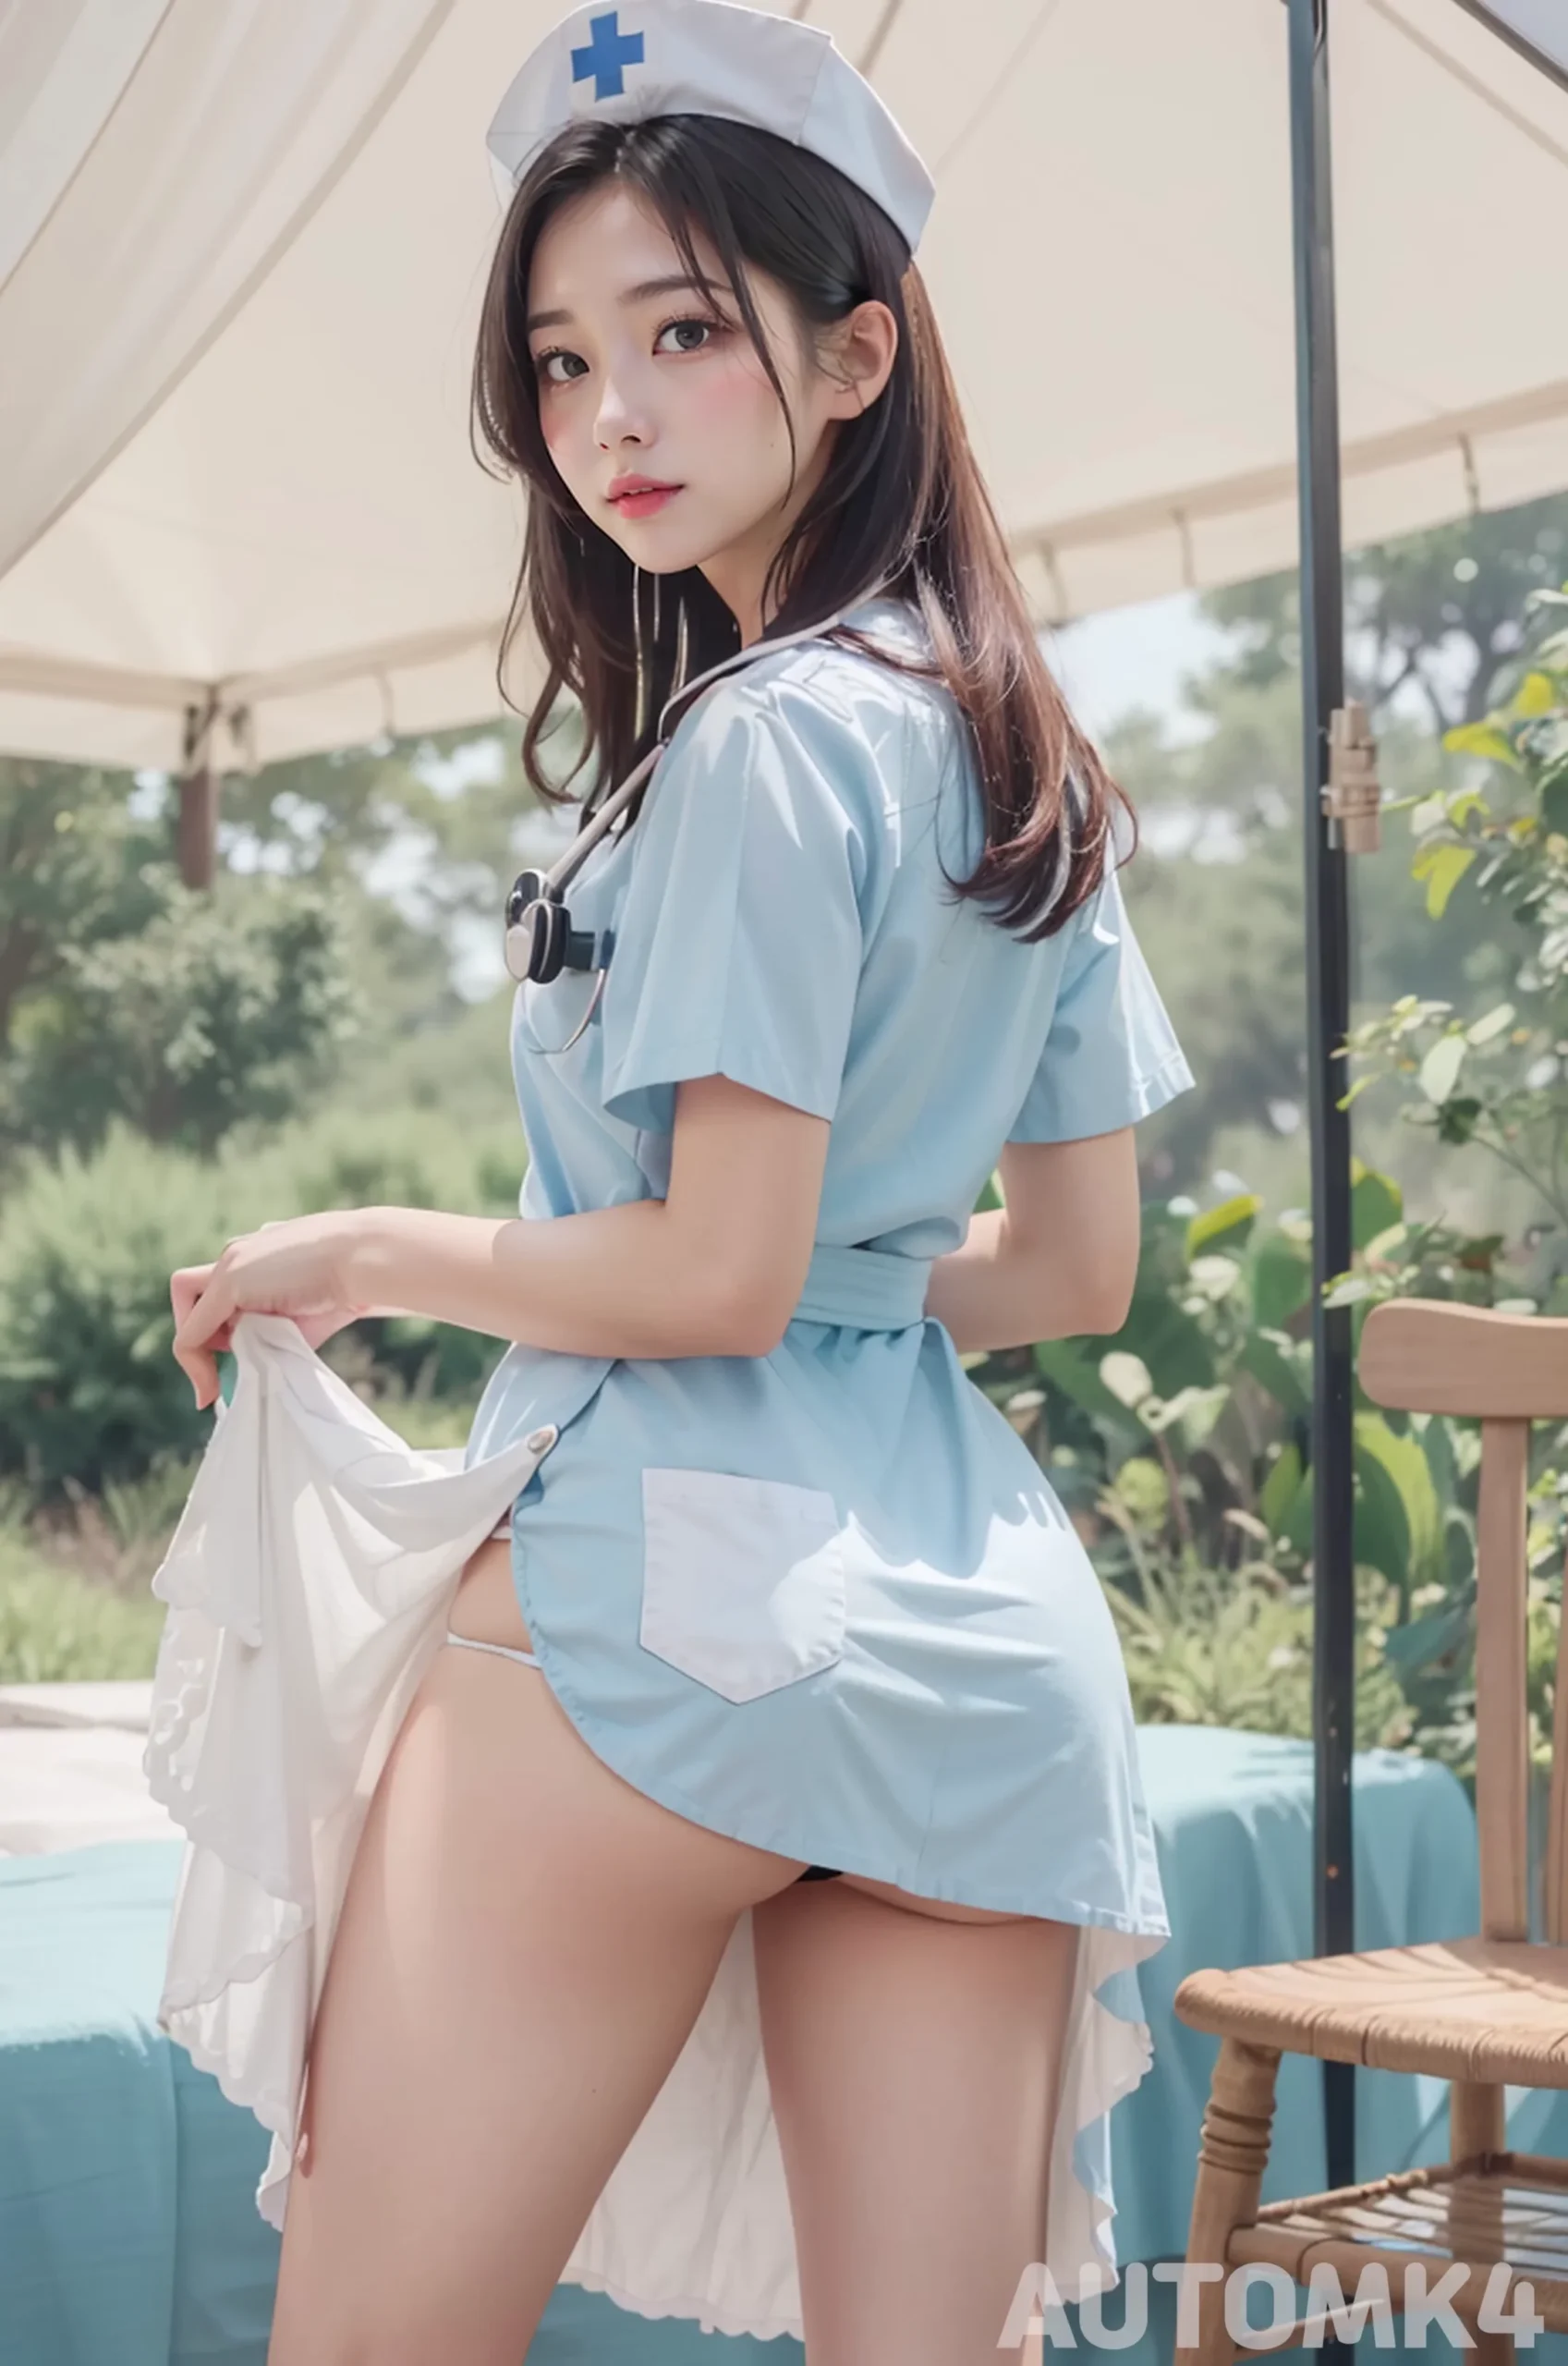 Ai Lookbook 4K: Sexy Nurses Images 24